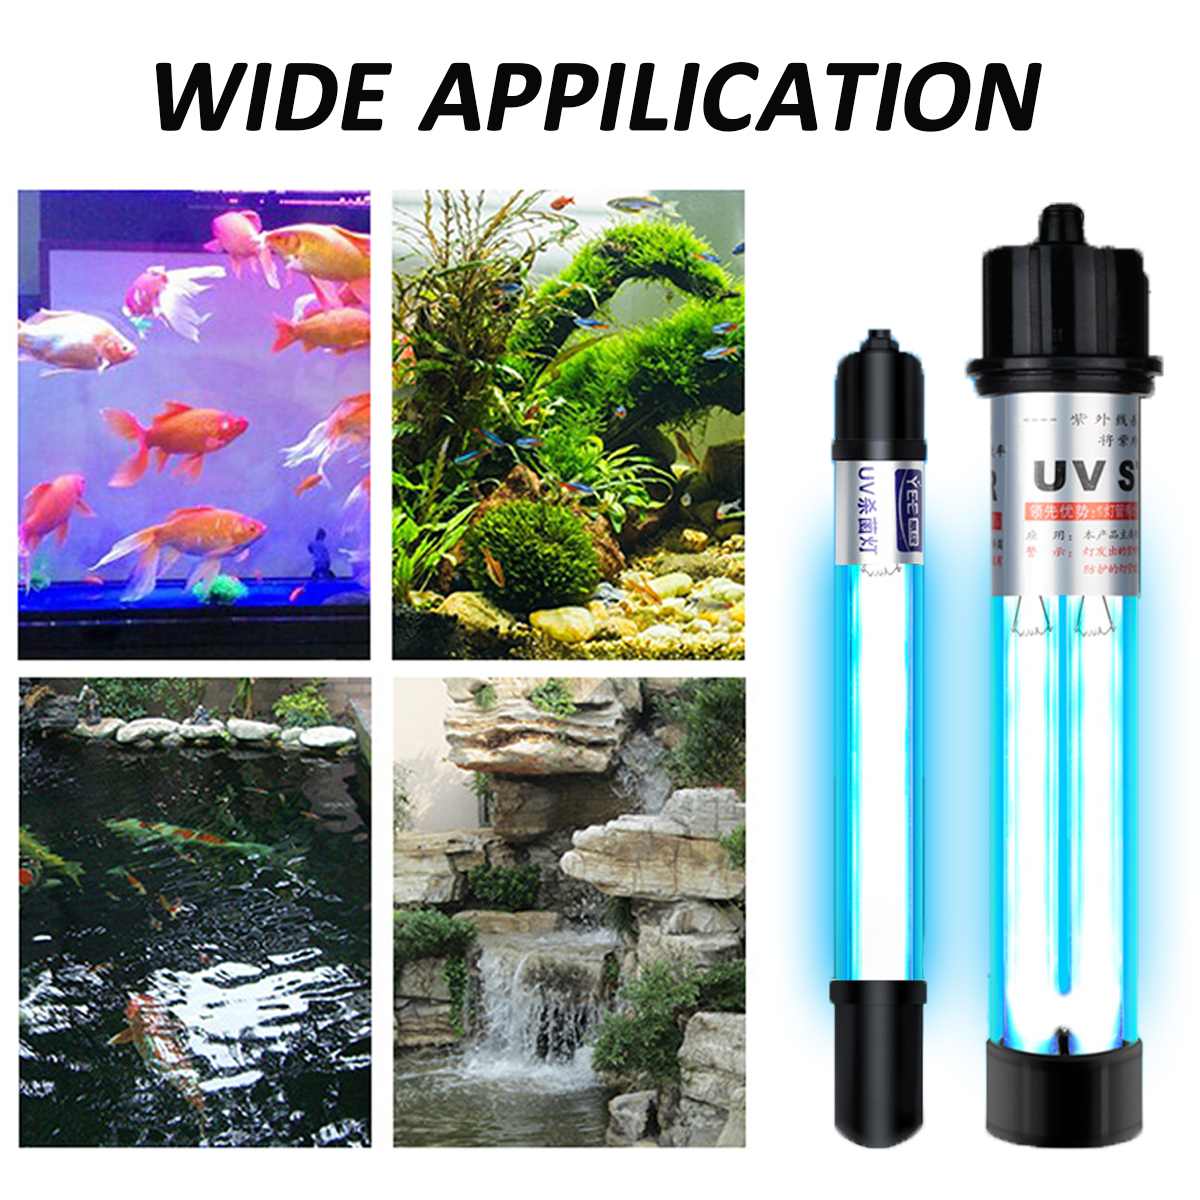 Đèn UV 20W Sterilization King Bóng Kép cao cấp, diệt tảo, diệt khuẩn cho bể cá, hồ cá, hồ thủy sinh siêu sạch ( Trắng)